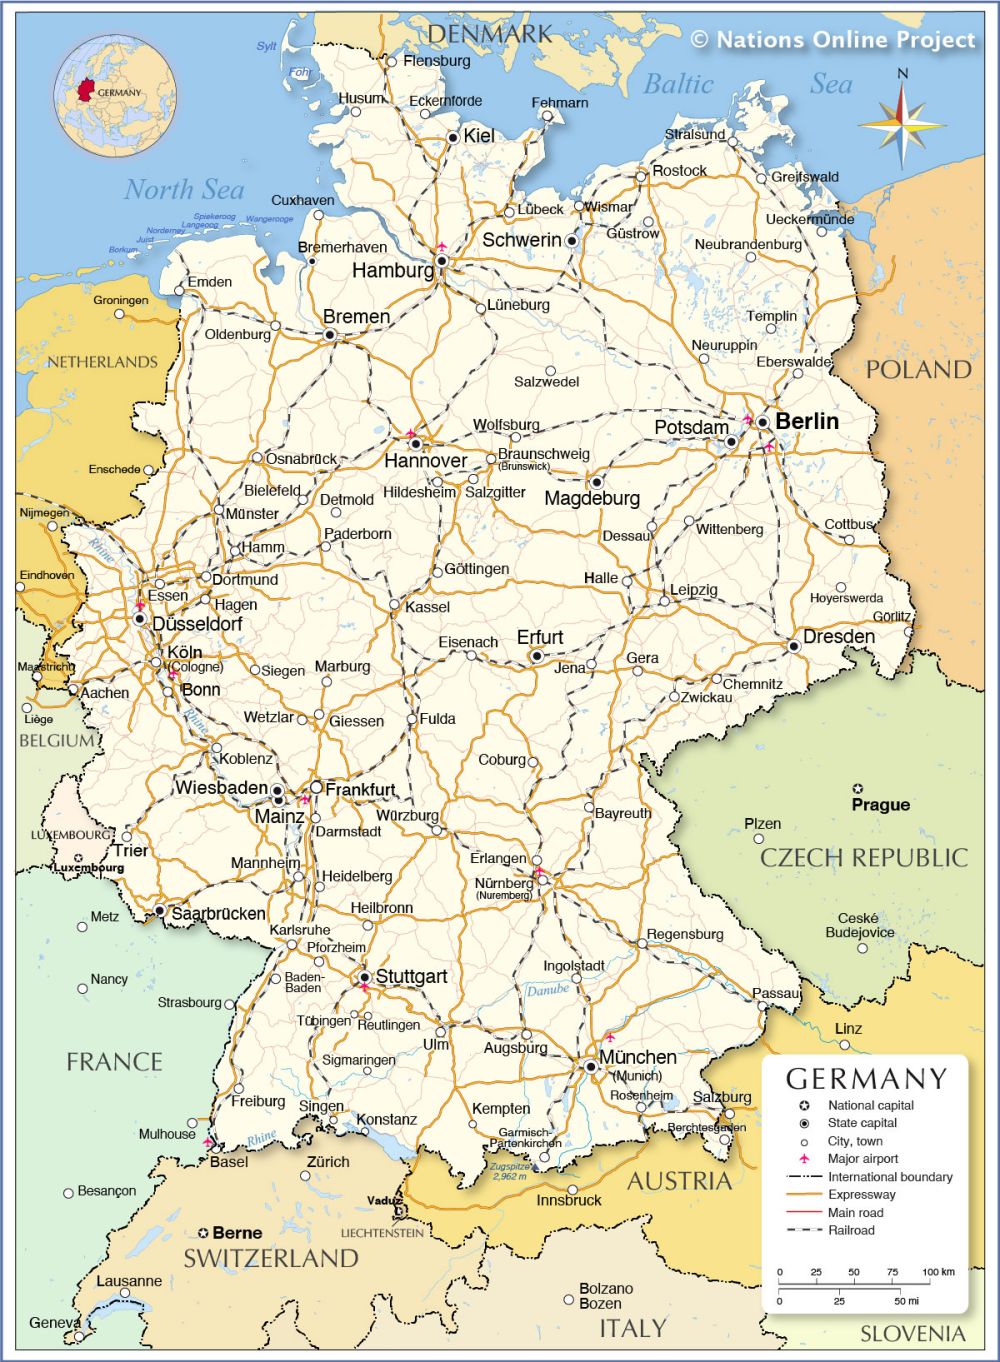 Dành thời gian để khám phá bản đồ Đức phóng to năm 2024, với việc ghé thăm các thành phố đa dạng và khu vực tự nhiên đẹp như Bavaria Alps và thung lũng sông Moselle. Tìm kiếm địa điểm yêu thích của bạn trên bản đồ và chuẩn bị để trải nghiệm một kỳ nghỉ tuyệt vời ở nước Đức.